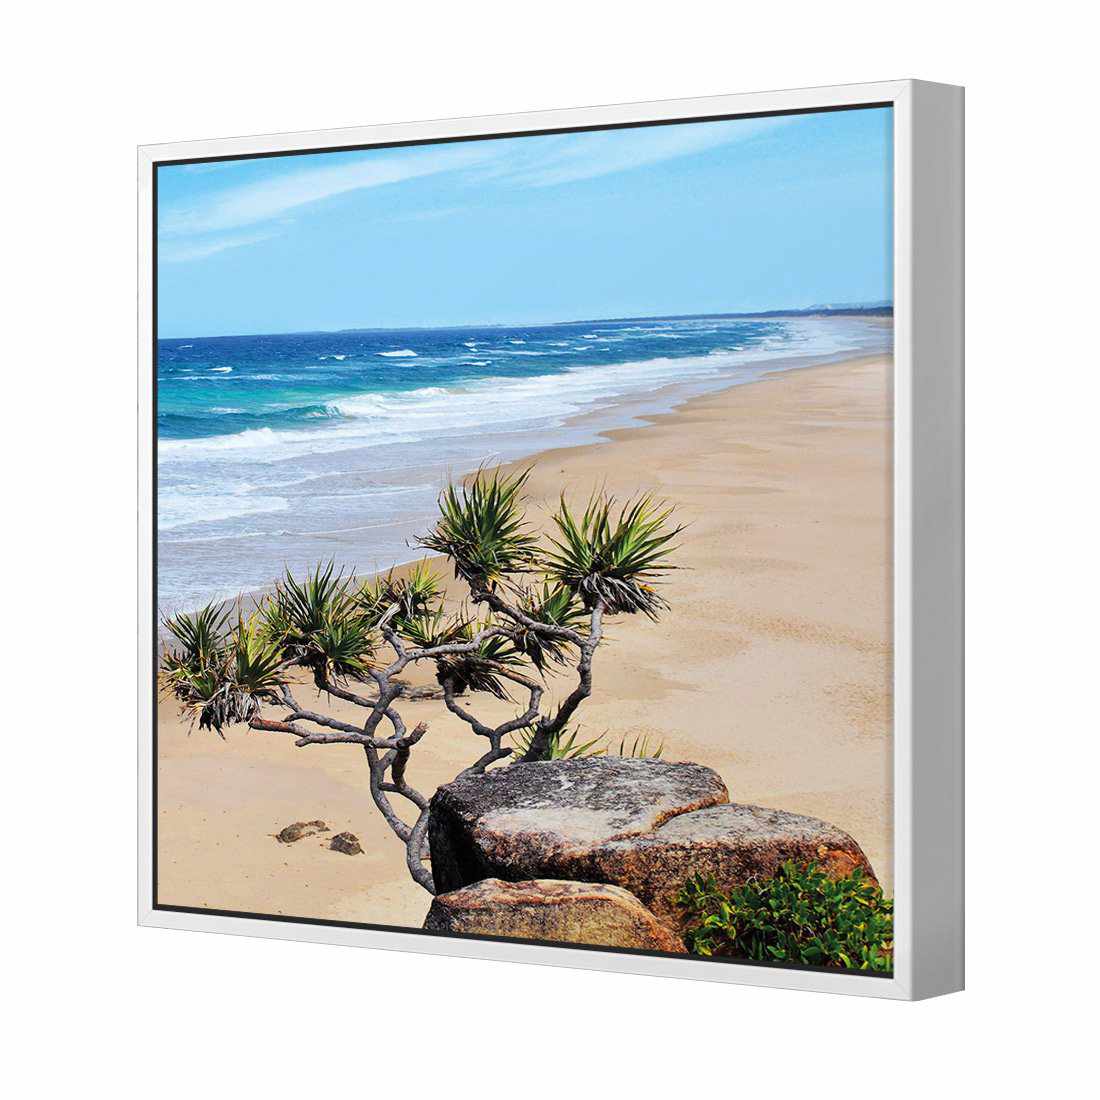 Coolum Beach Canvas Art-Canvas-Wall Art Designs-30x30cm-Canvas - White Frame-Wall Art Designs